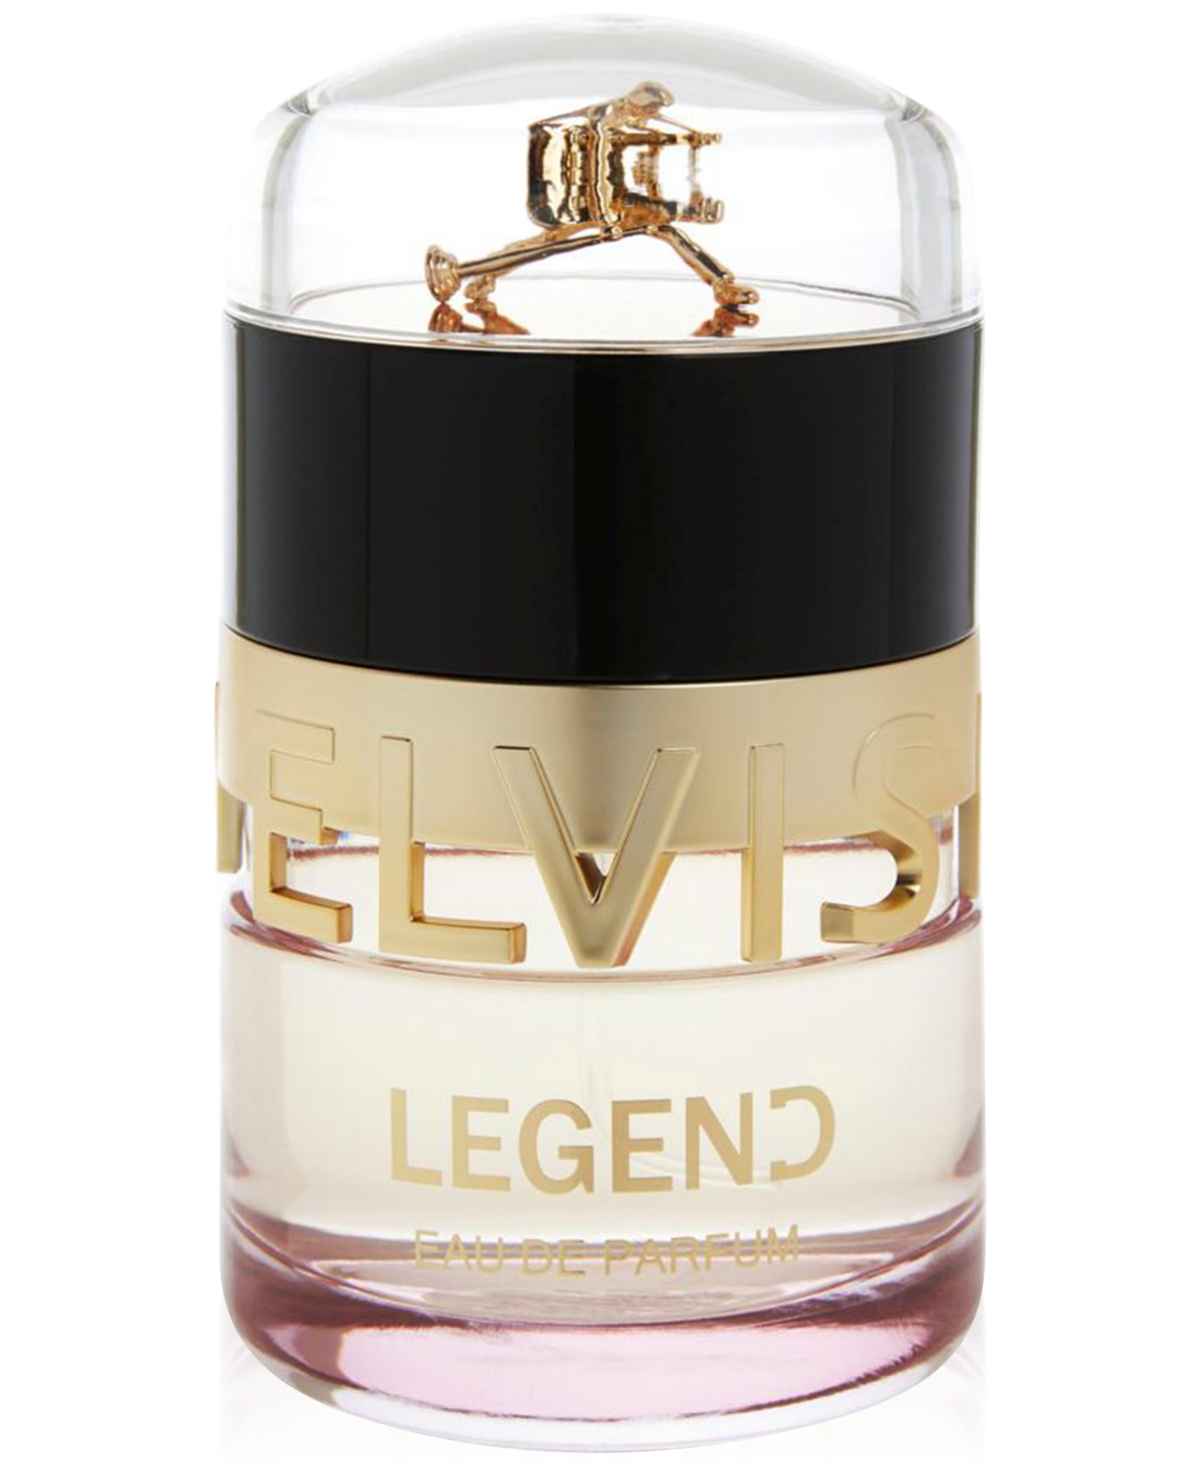 Elvis Presley Legend For Her Eau de Parfum, 3.4 oz.